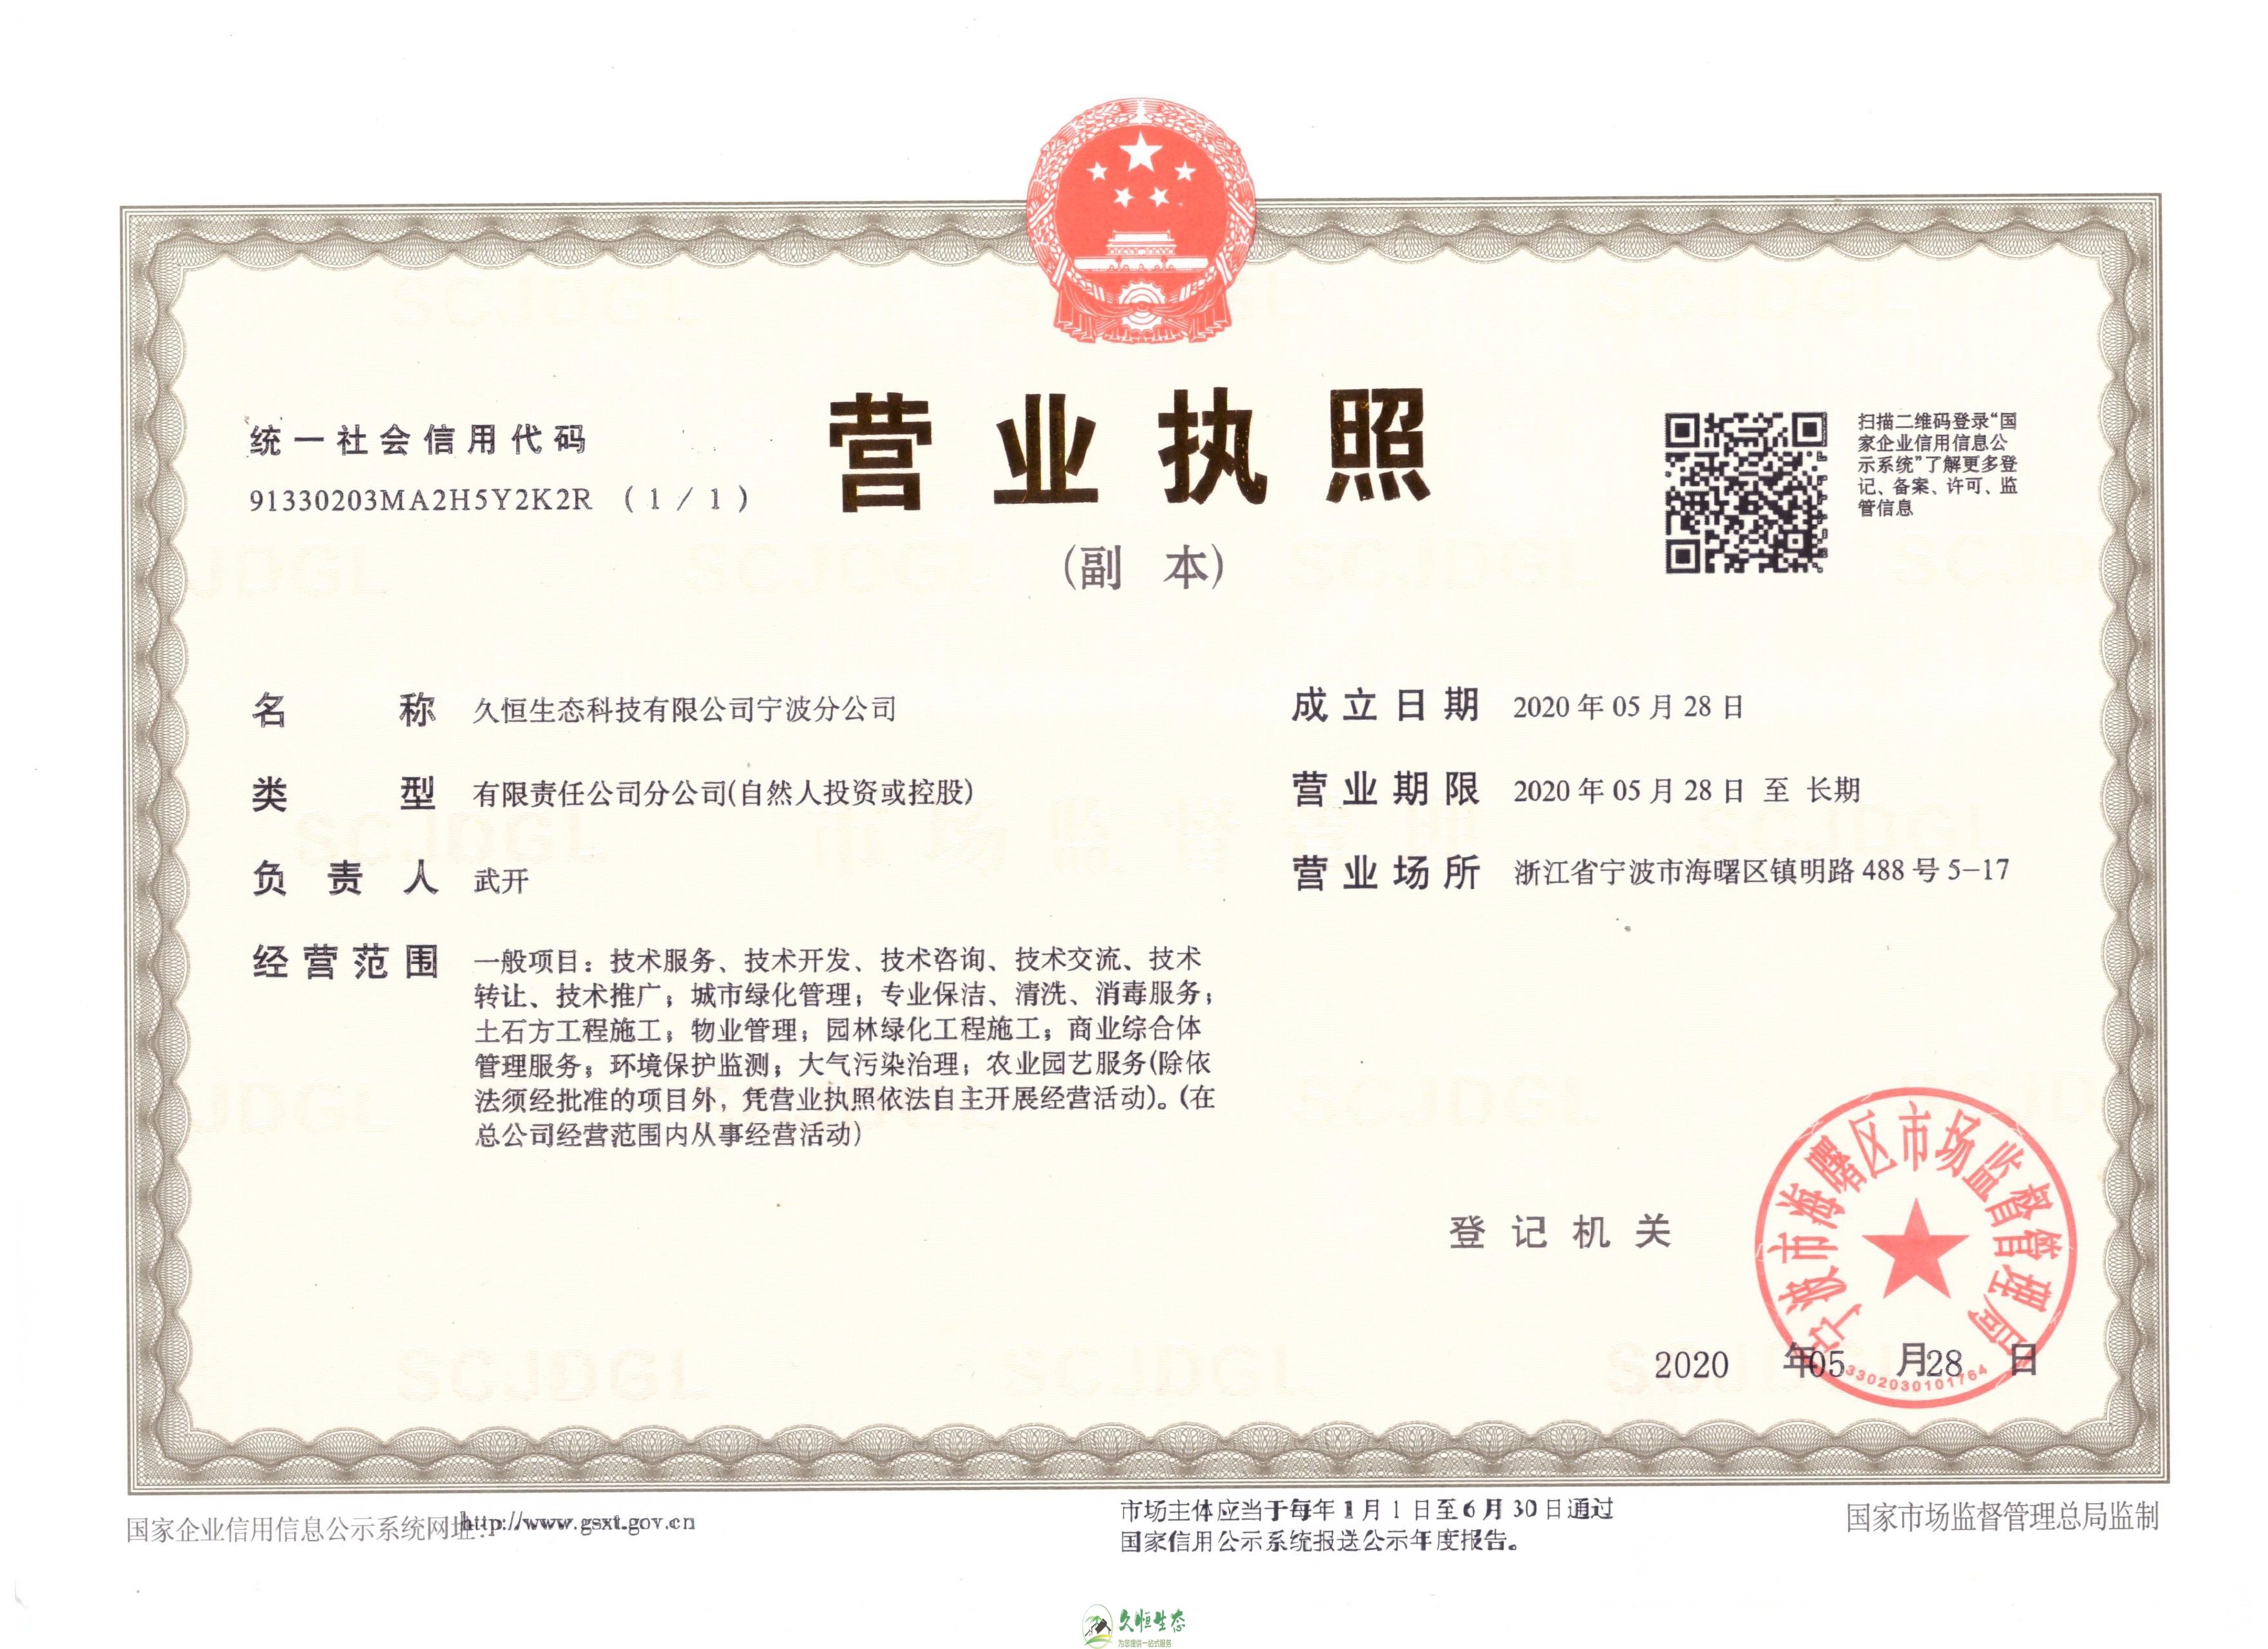 杭州拱墅久恒生态宁波分公司2020年5月28日成立